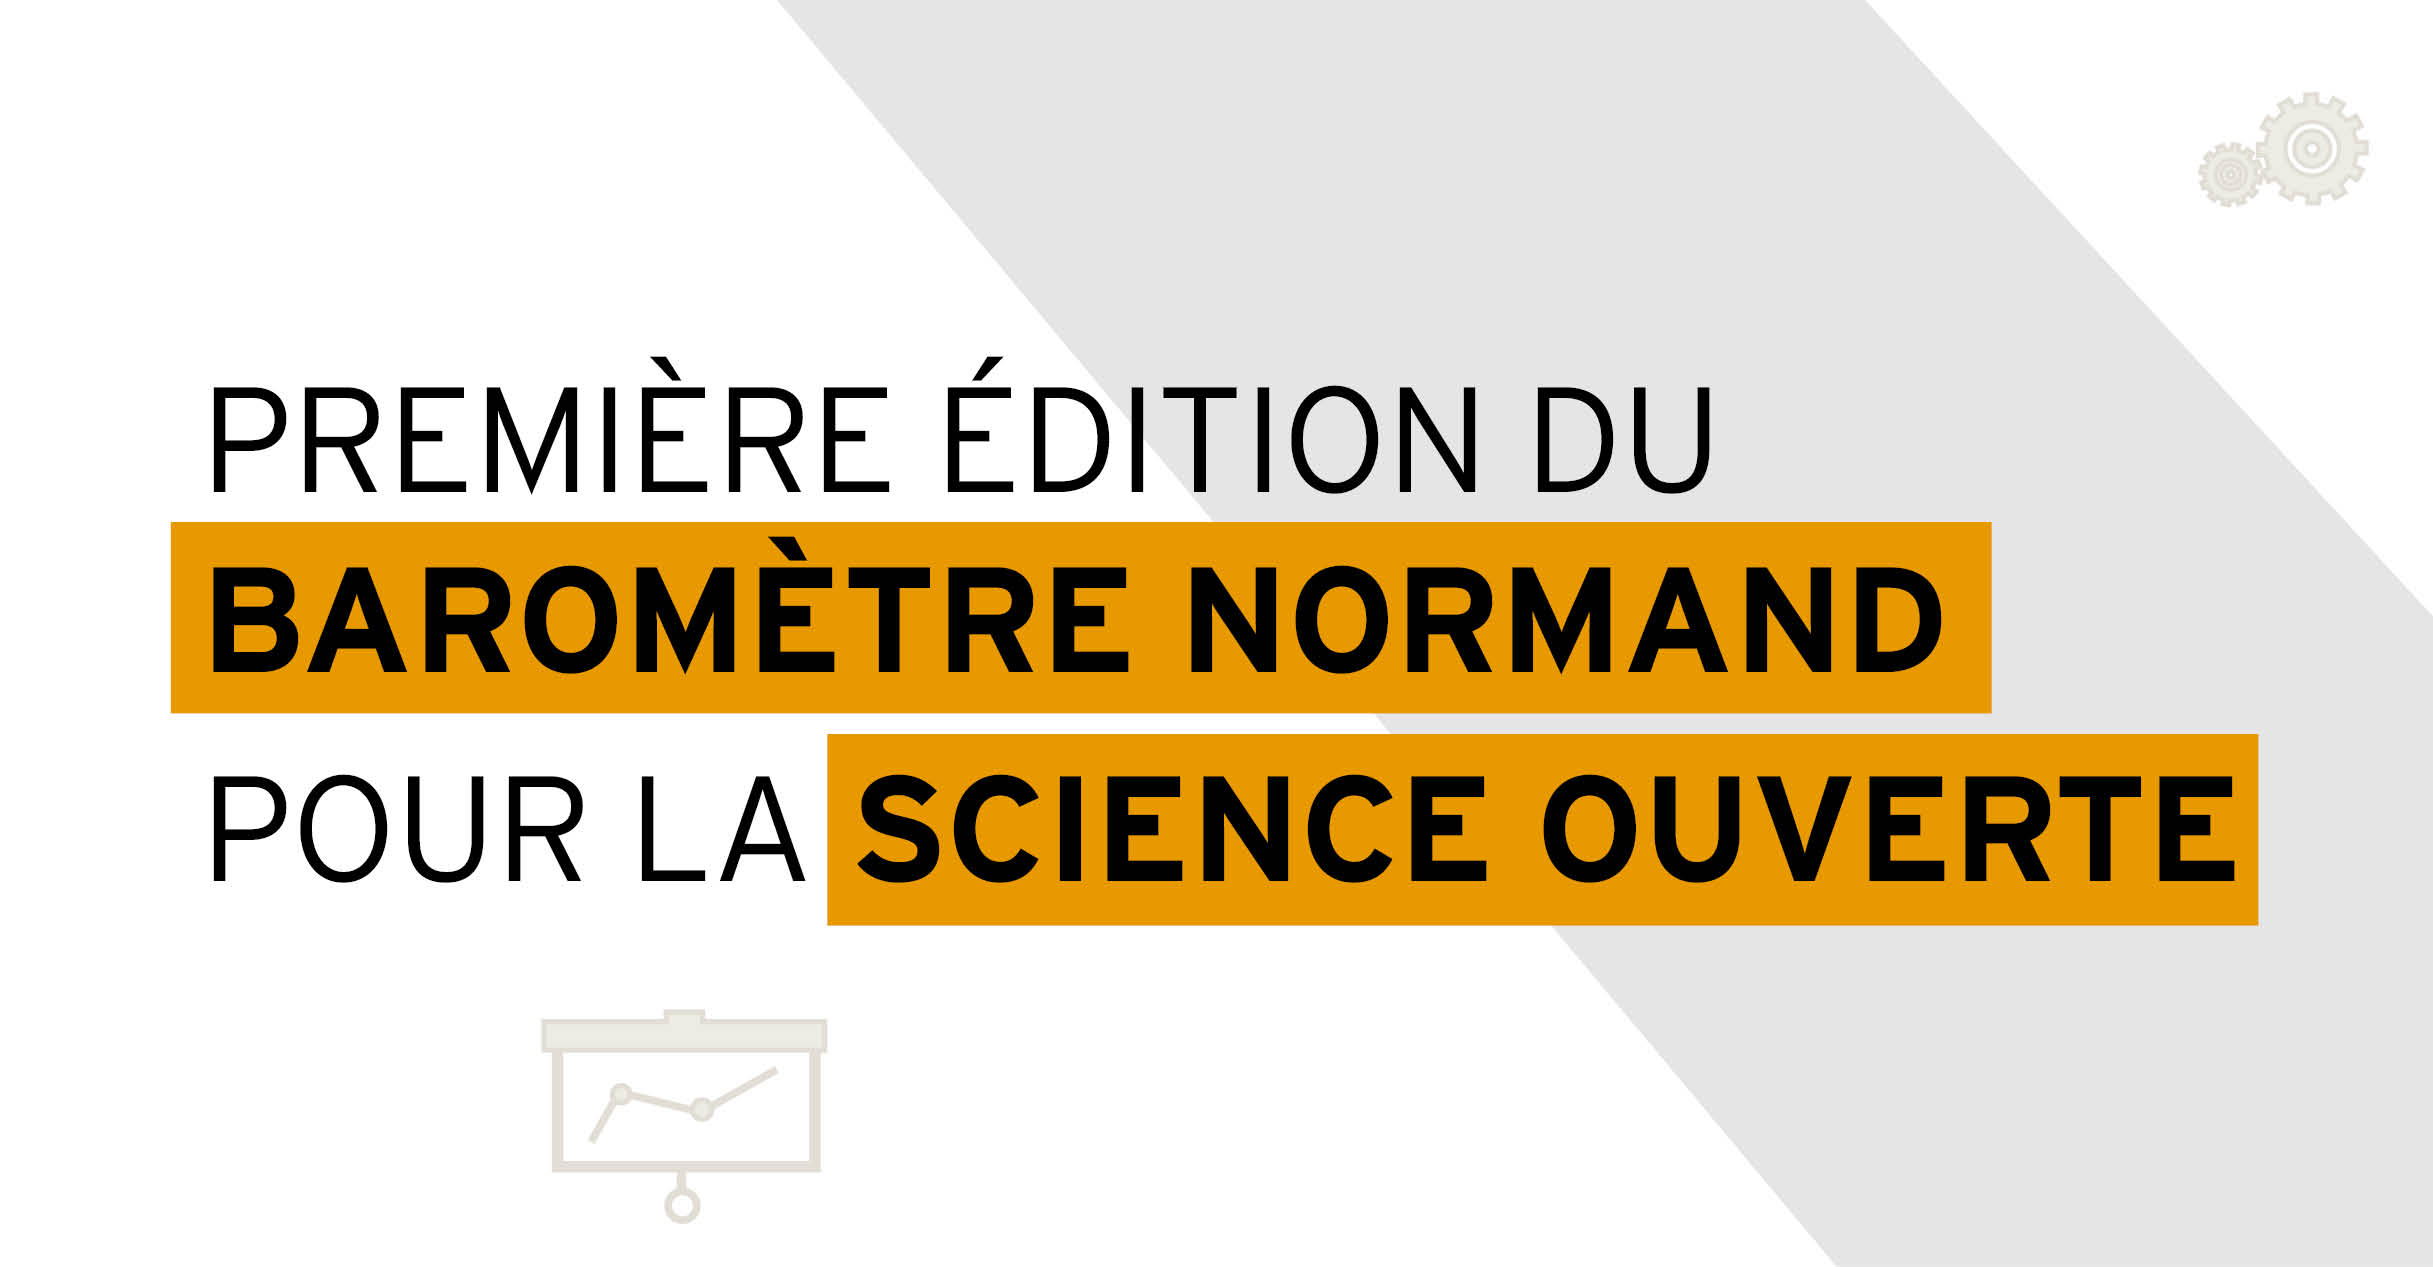 Première édition du baromètre normand pour la science ouverte